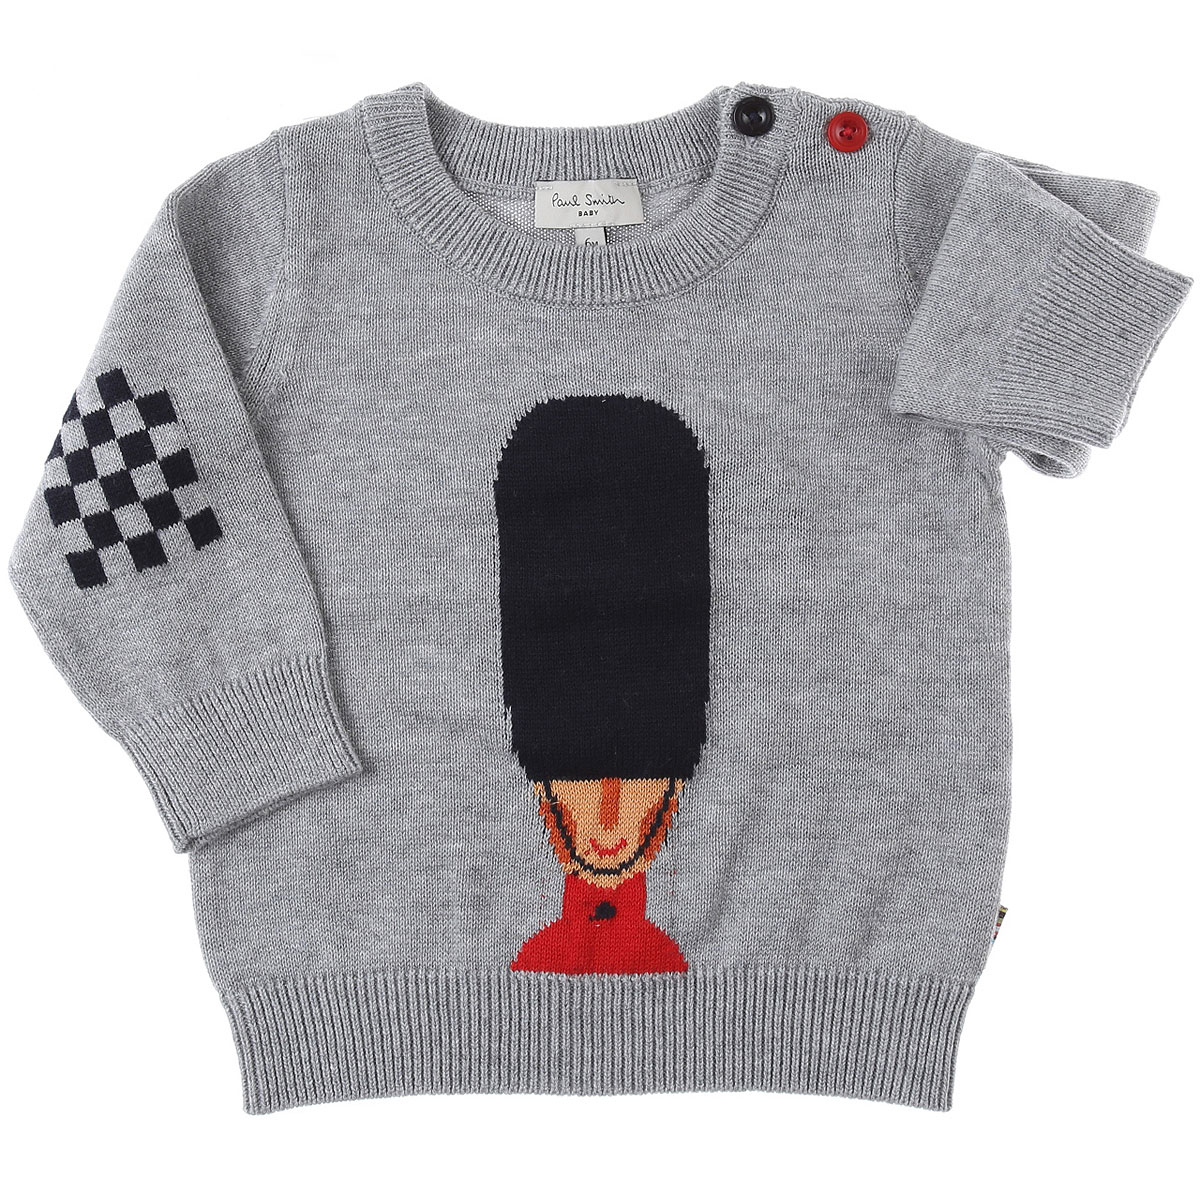 Paul Smith Baby Pullover für Jungen Günstig im Sale, Grau, Baumwolle, 2017, 12 M 18M 2Y 3Y 6M 9M